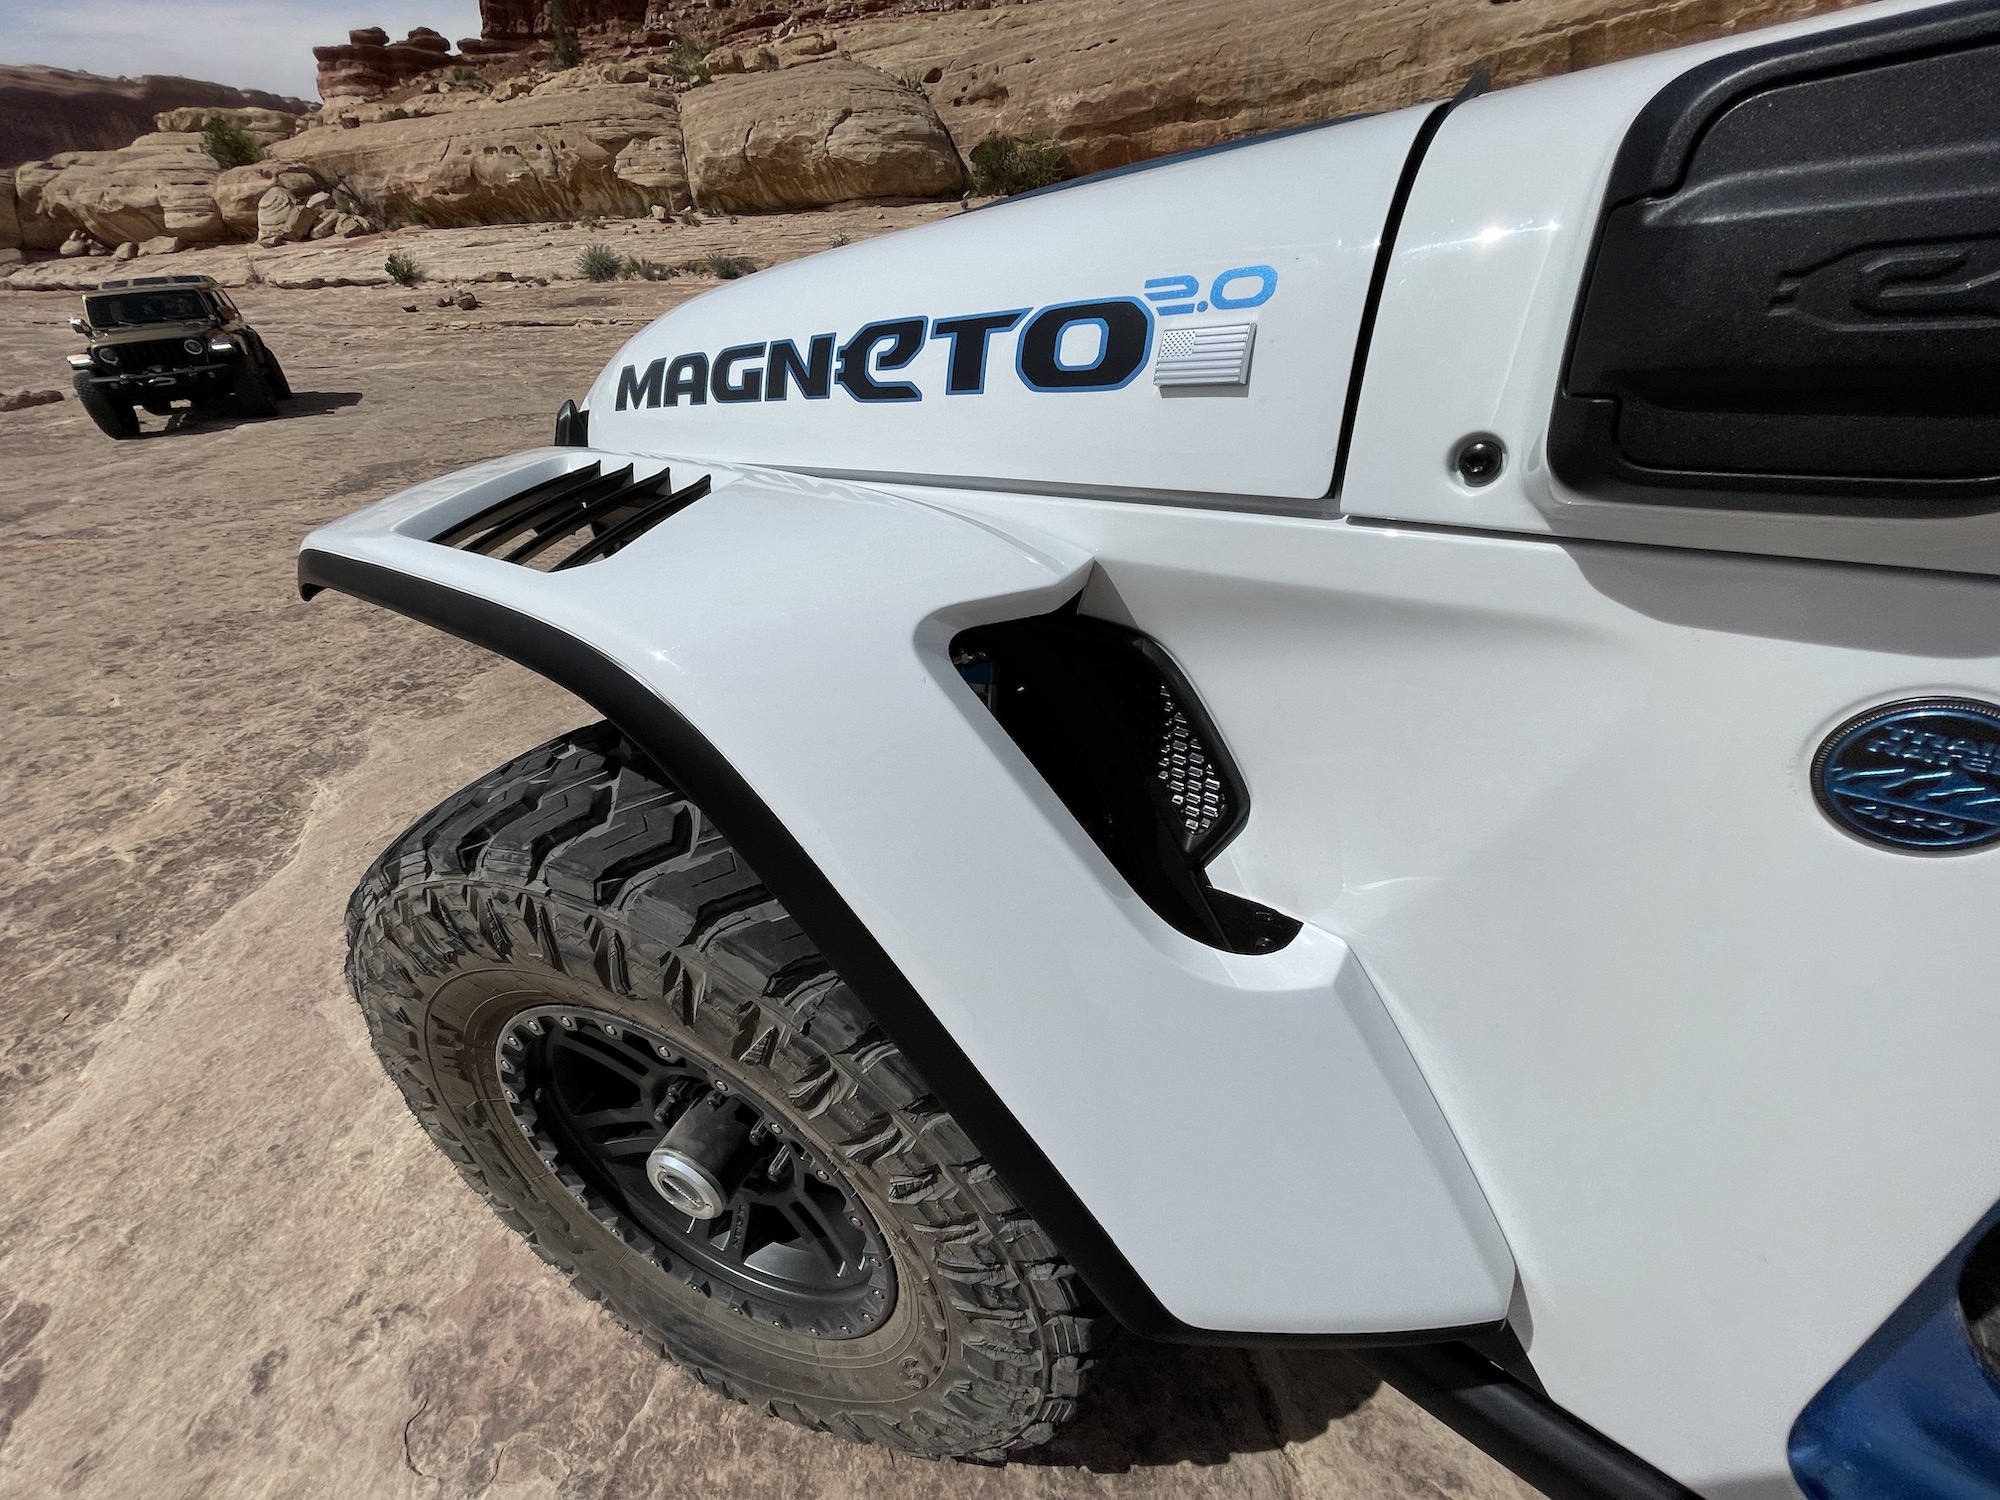 Jeep Magneto, Concept vehicles, Stellantis production, TechCrunch, 2000x1500 HD Desktop